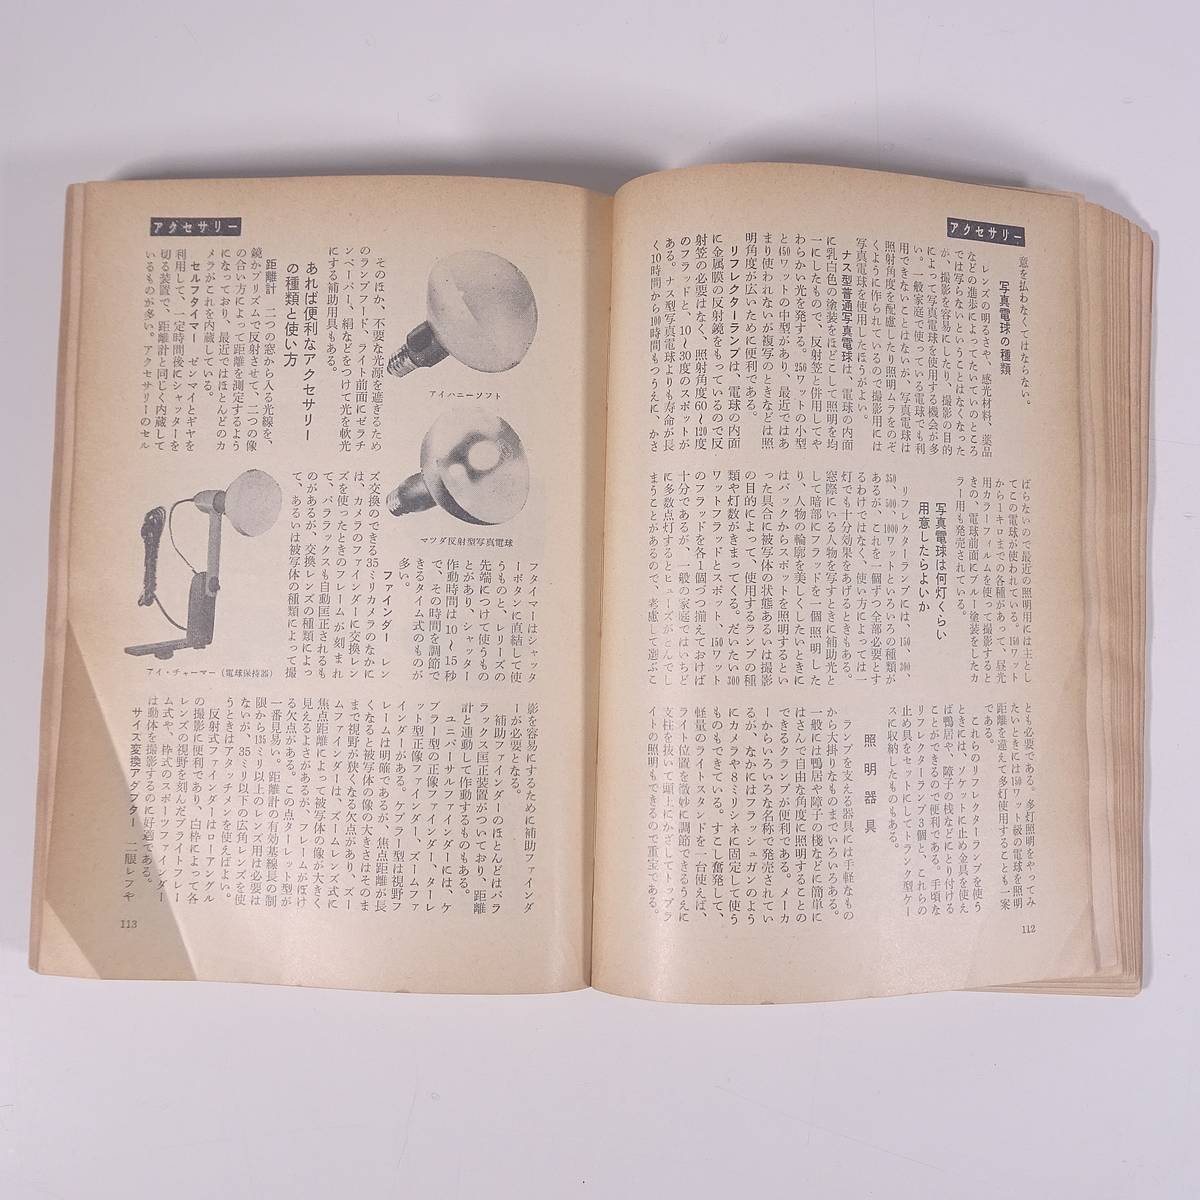 最新 現代写真の事典 日本カメラ臨時増刊 日本カメラ社 1962 単行本 カメラ 写真 撮影_画像8